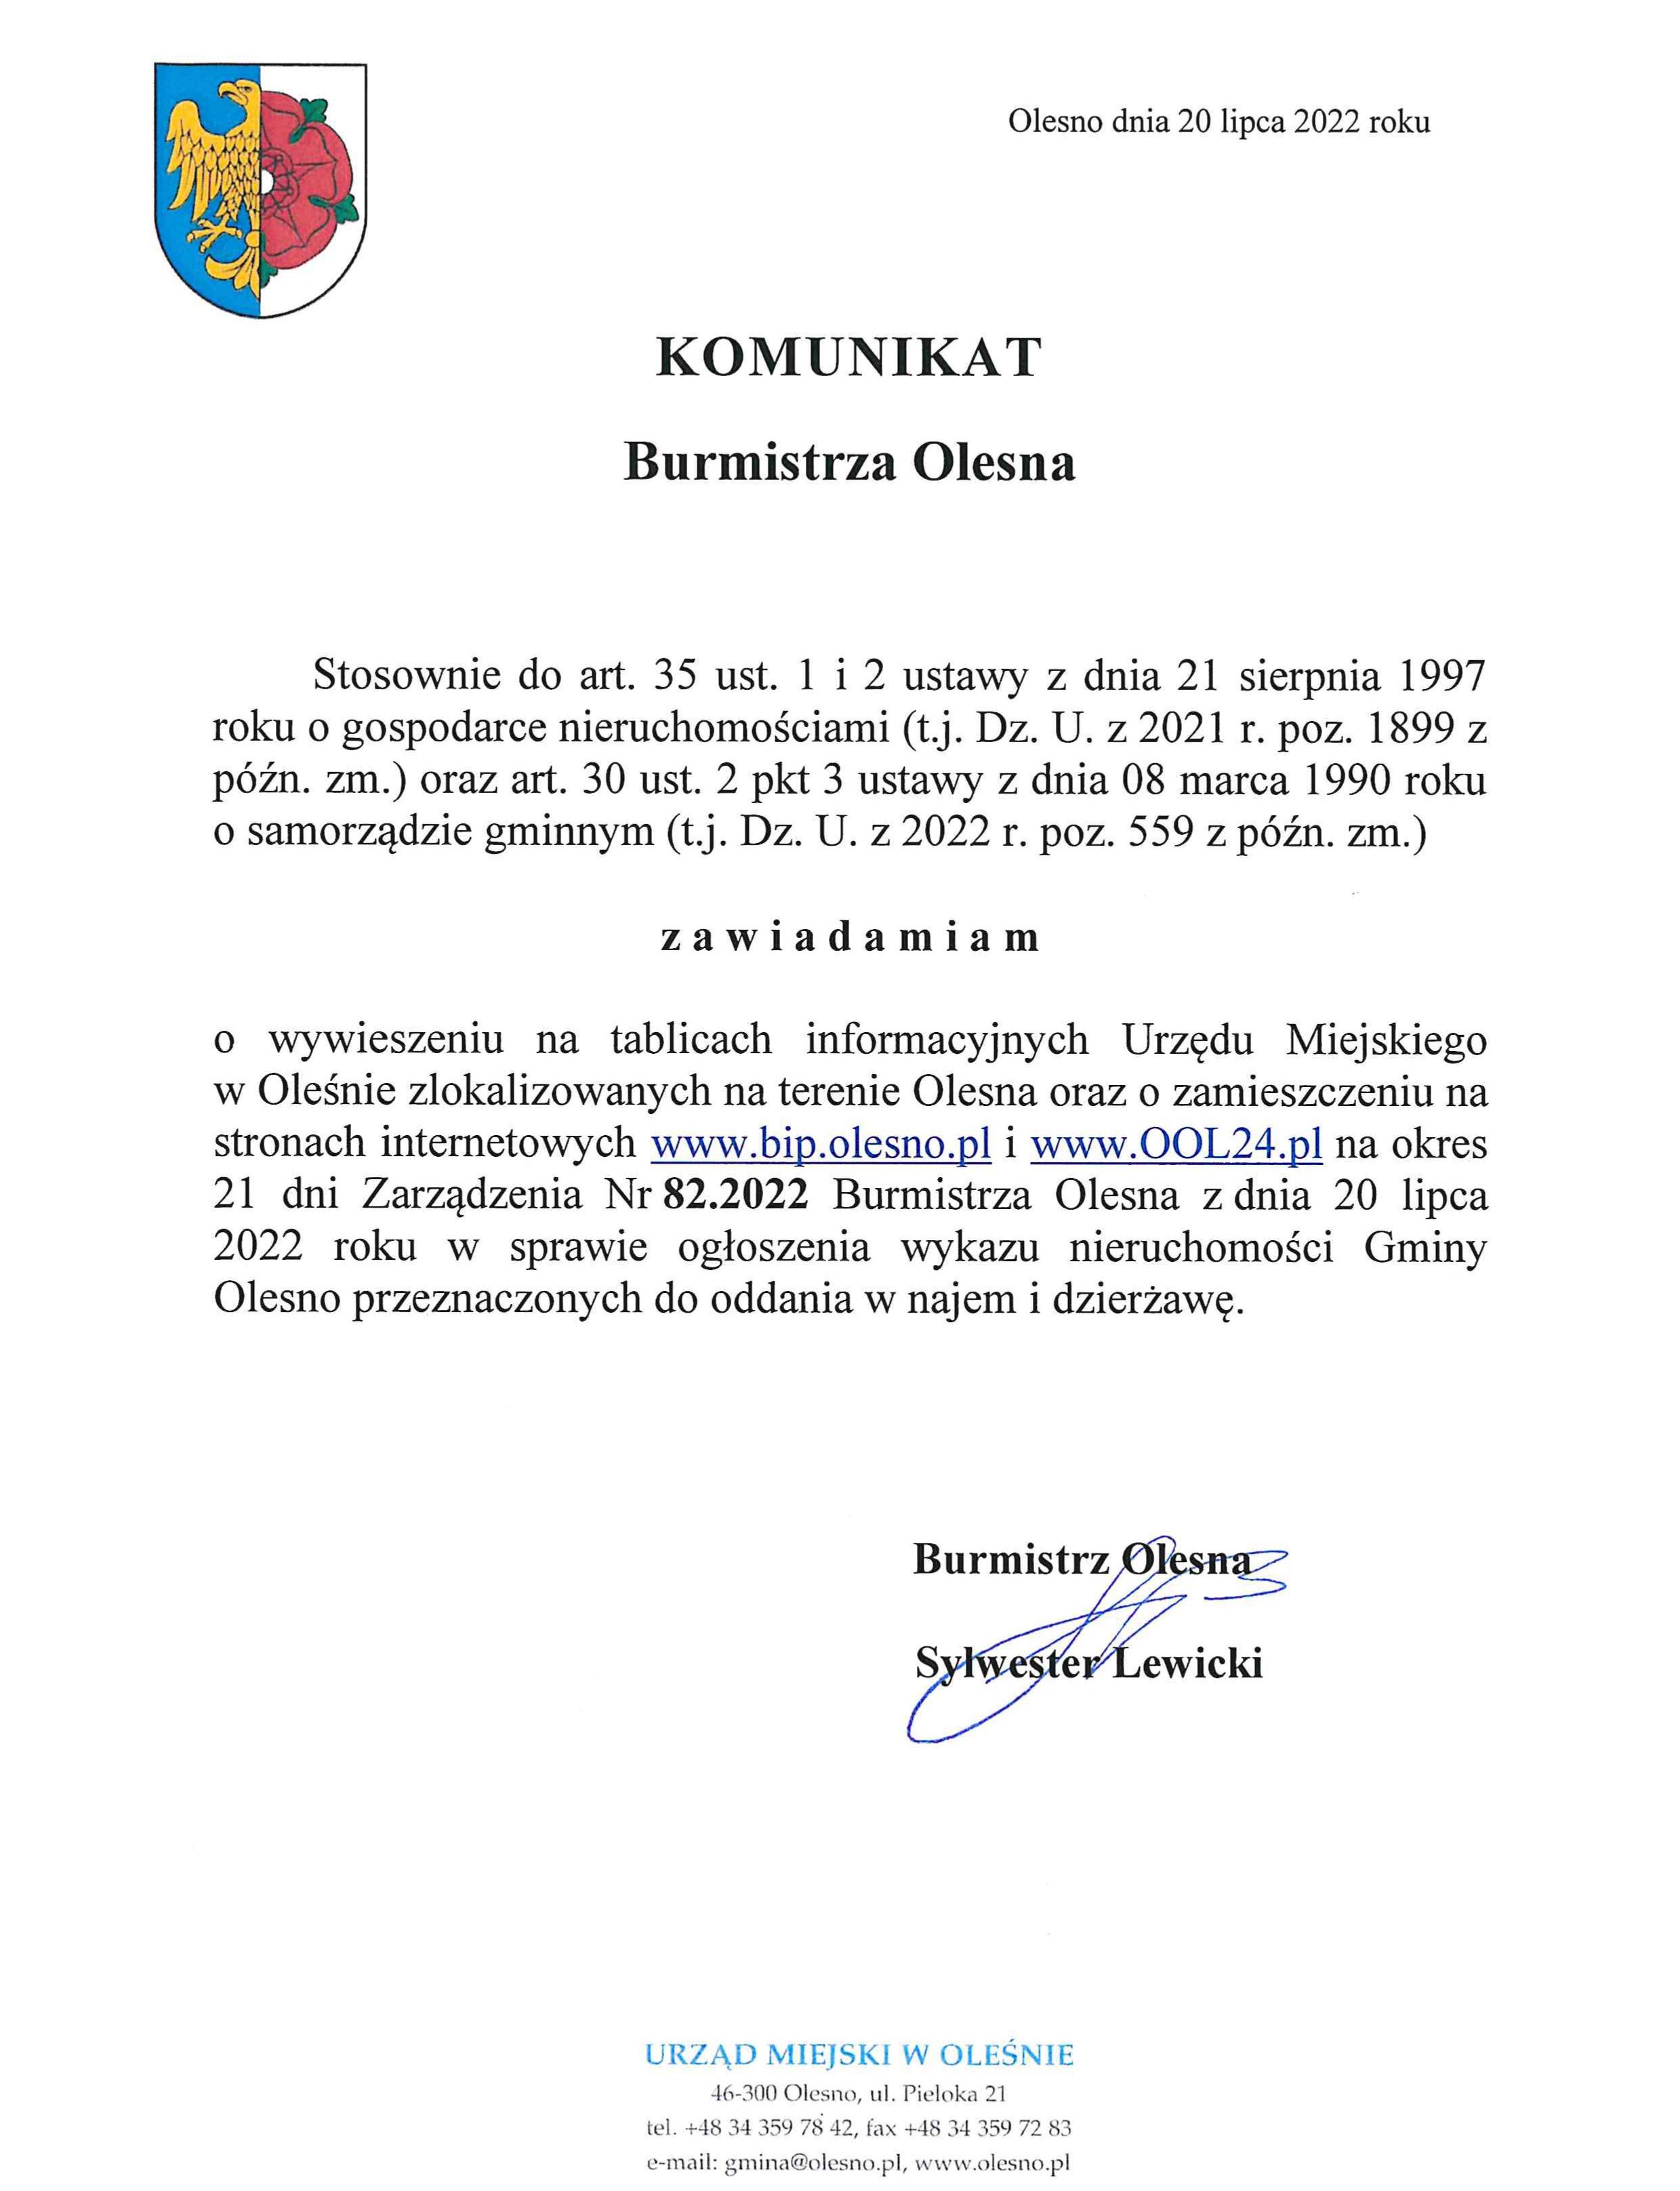 komunikat-burmistrza-olesna-upublicznienie-zarzadzenia-nr-82-2022